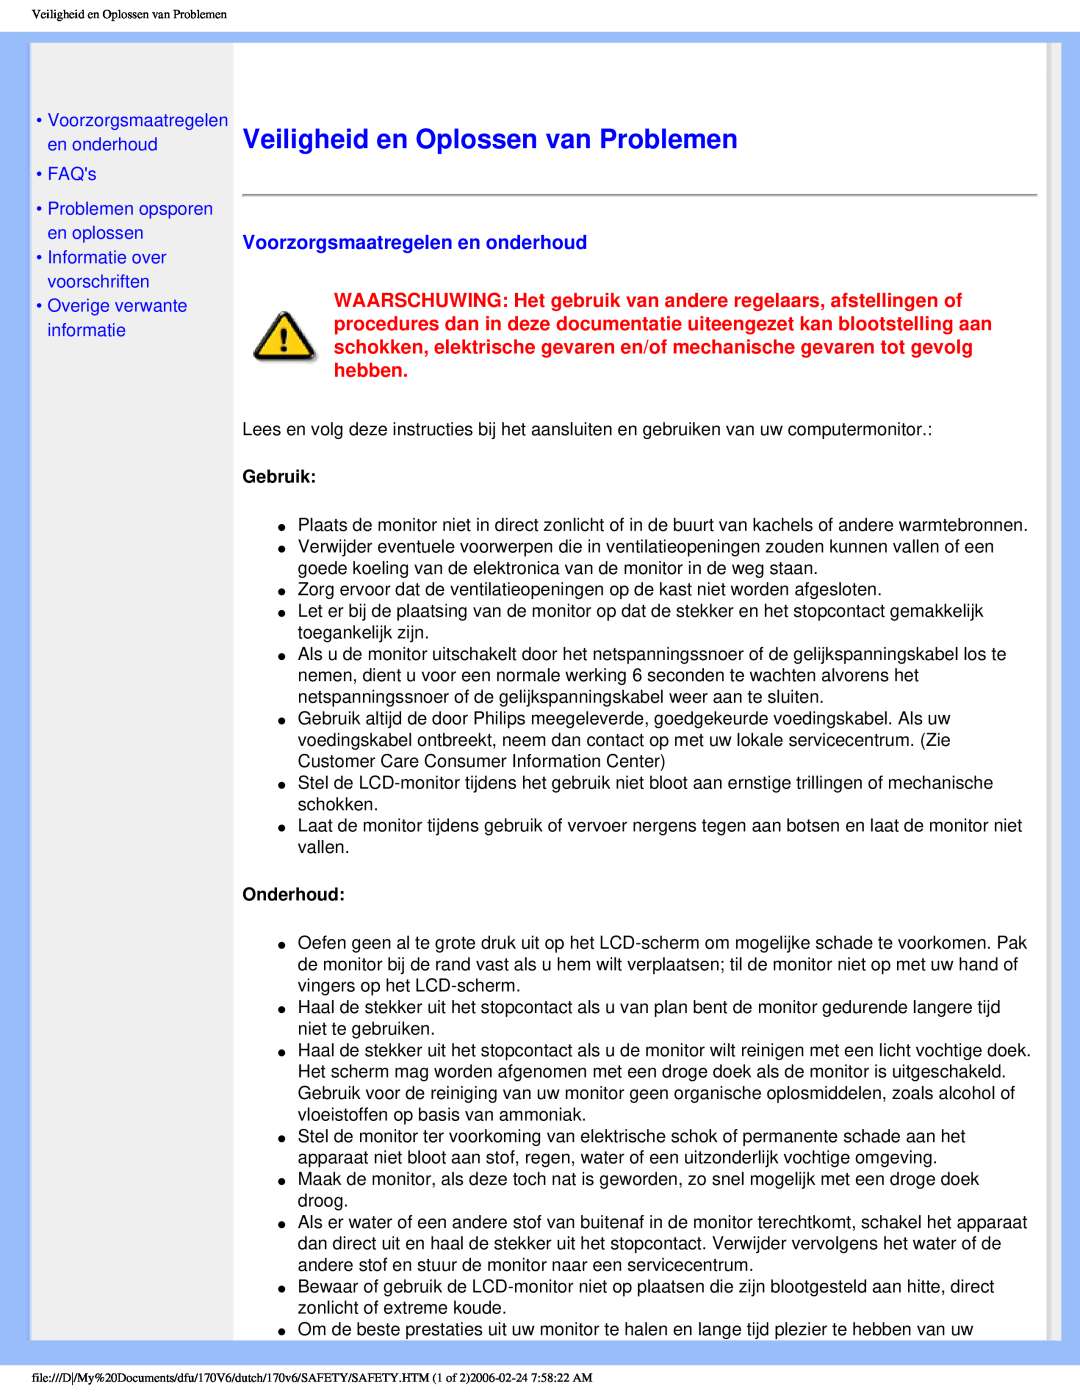 Philips 170V6 Veiligheid en Oplossen van Problemen, Voorzorgsmaatregelen en onderhoud, FAQs, Informatie over voorschriften 